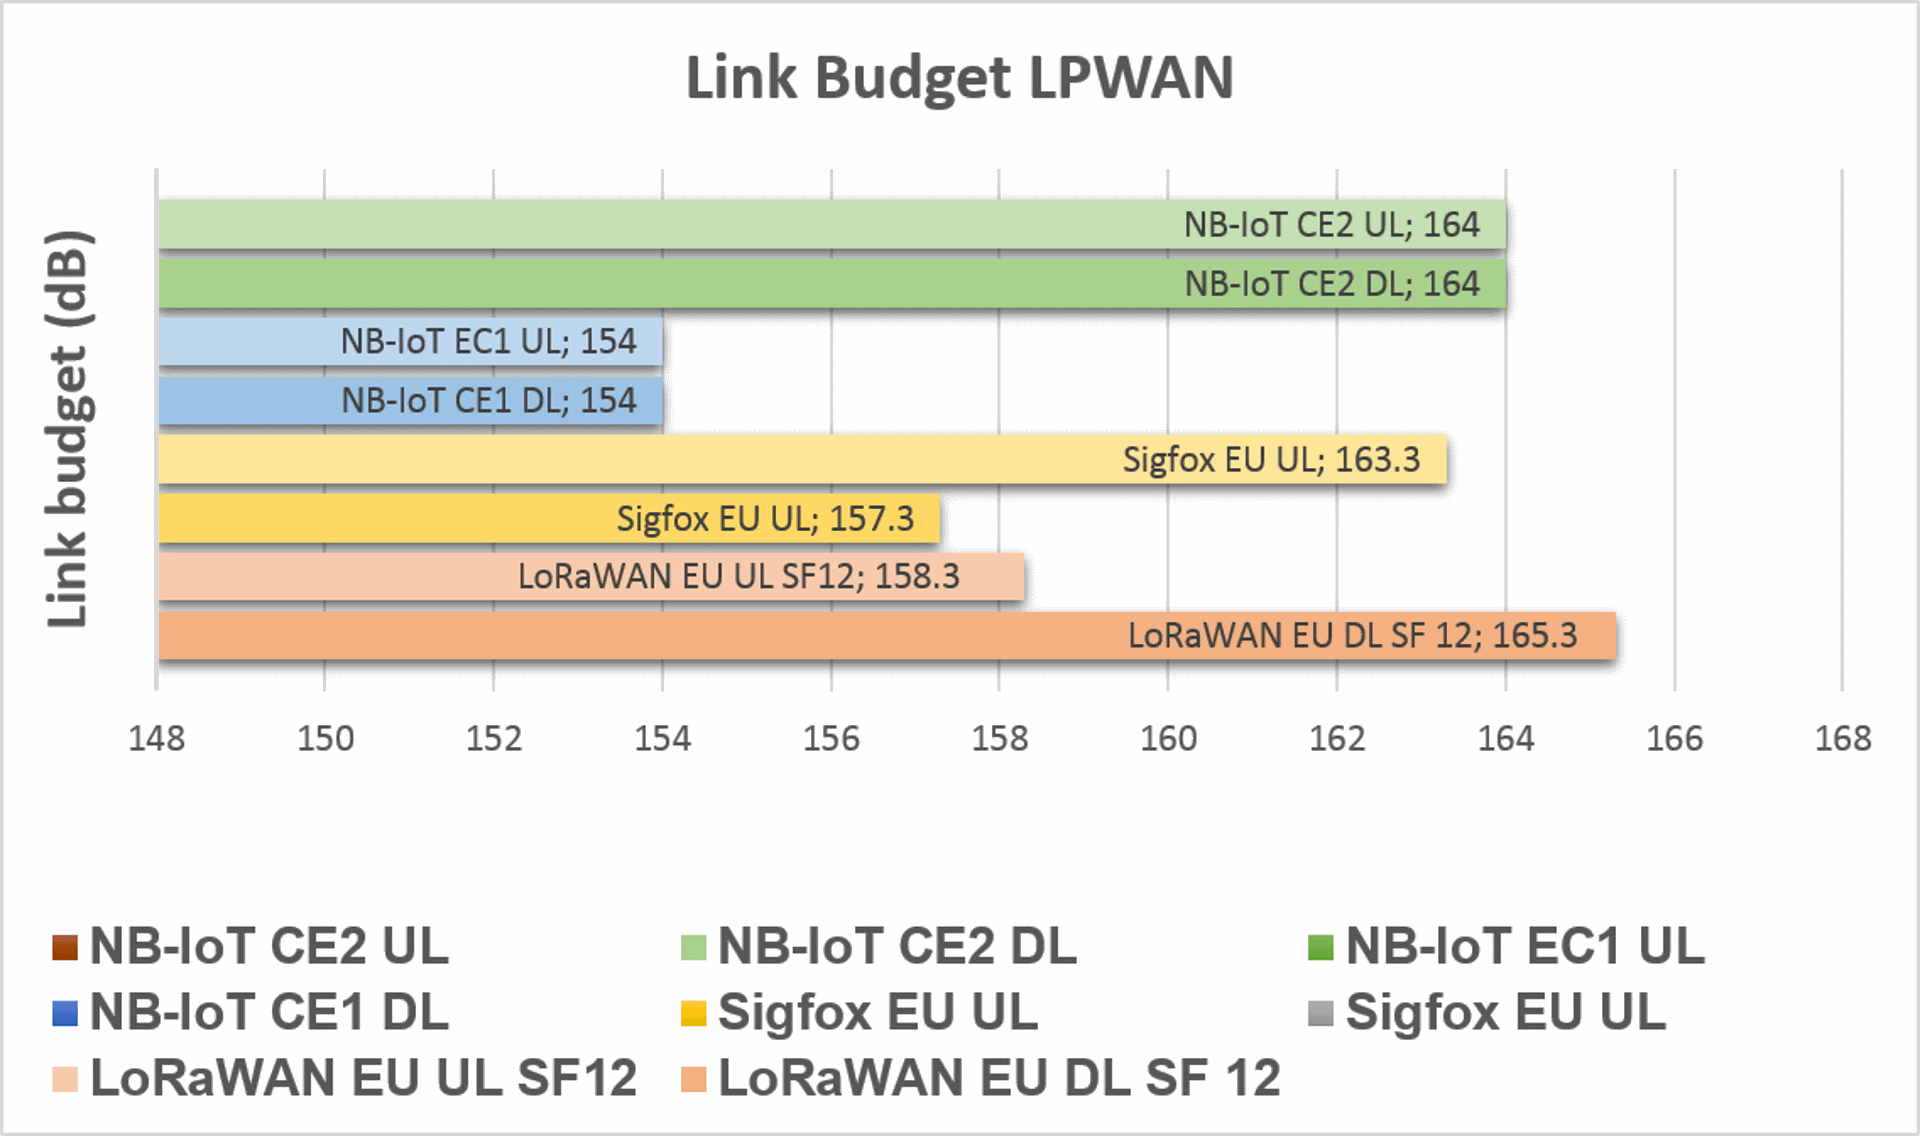 LPWAN link budget comparsion